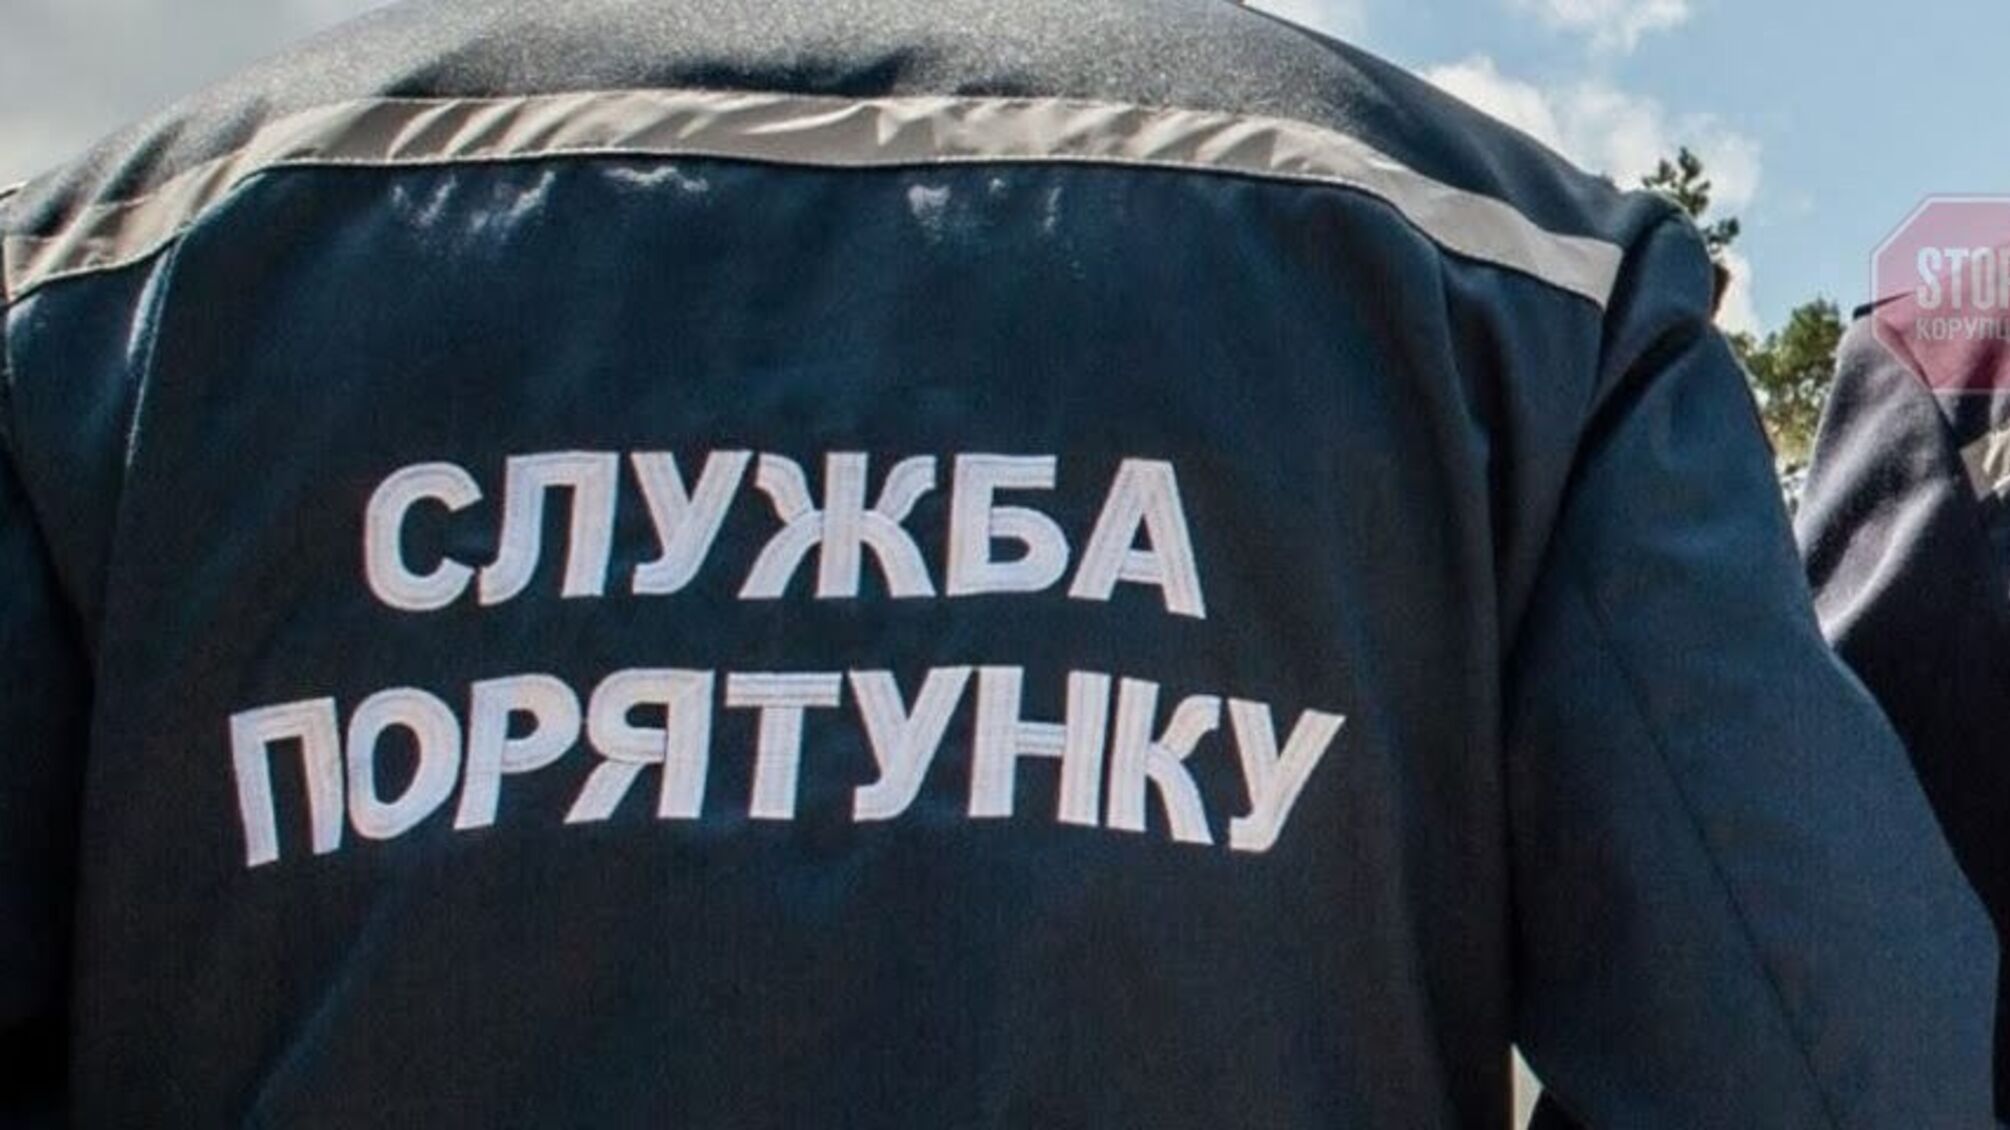 Новости Харькова: на кольцевой дороге перевернулся автомобиль, есть пострадавшие